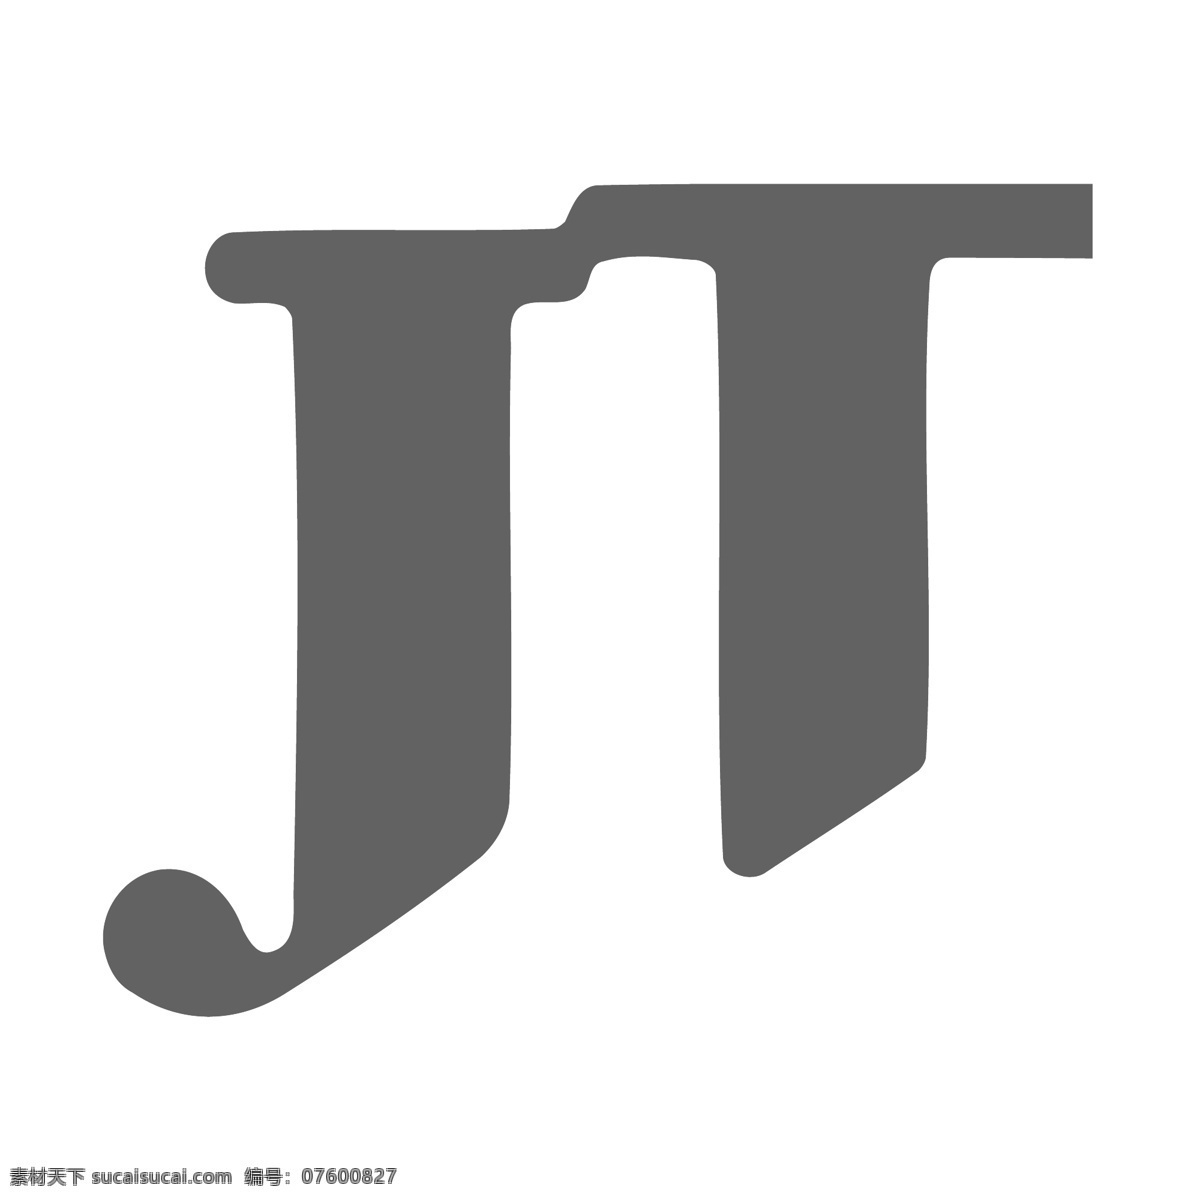 日本 烟草 公司 免费 标识 psd源文件 logo设计